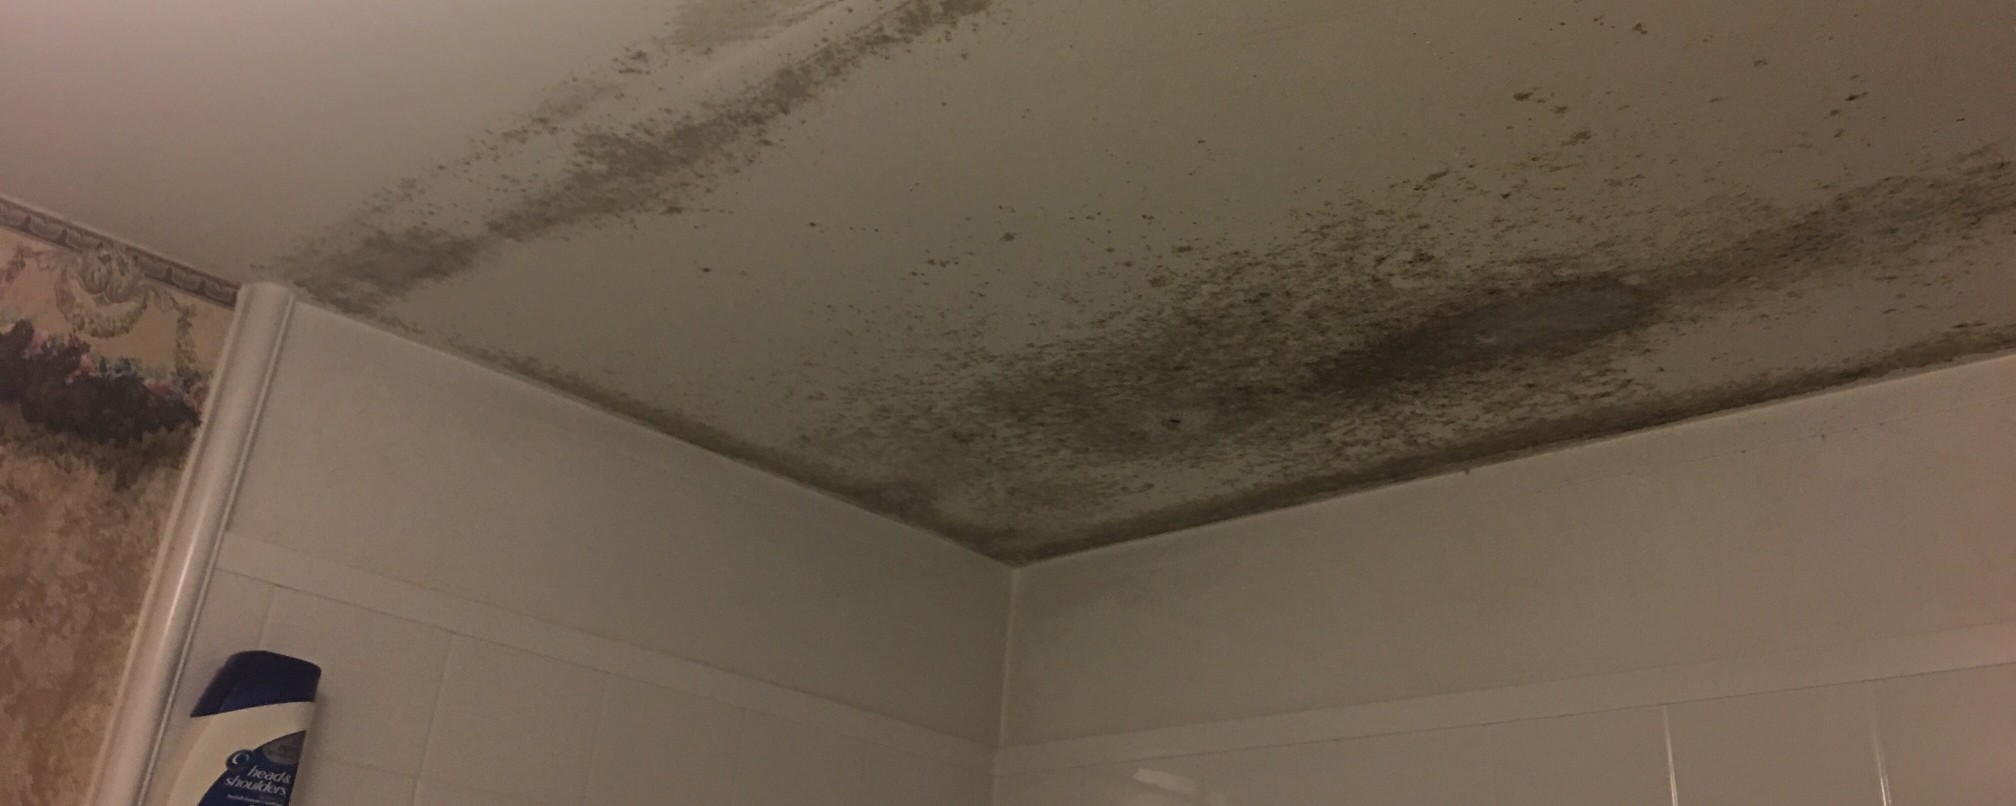 moldy-bathroom-ceiling